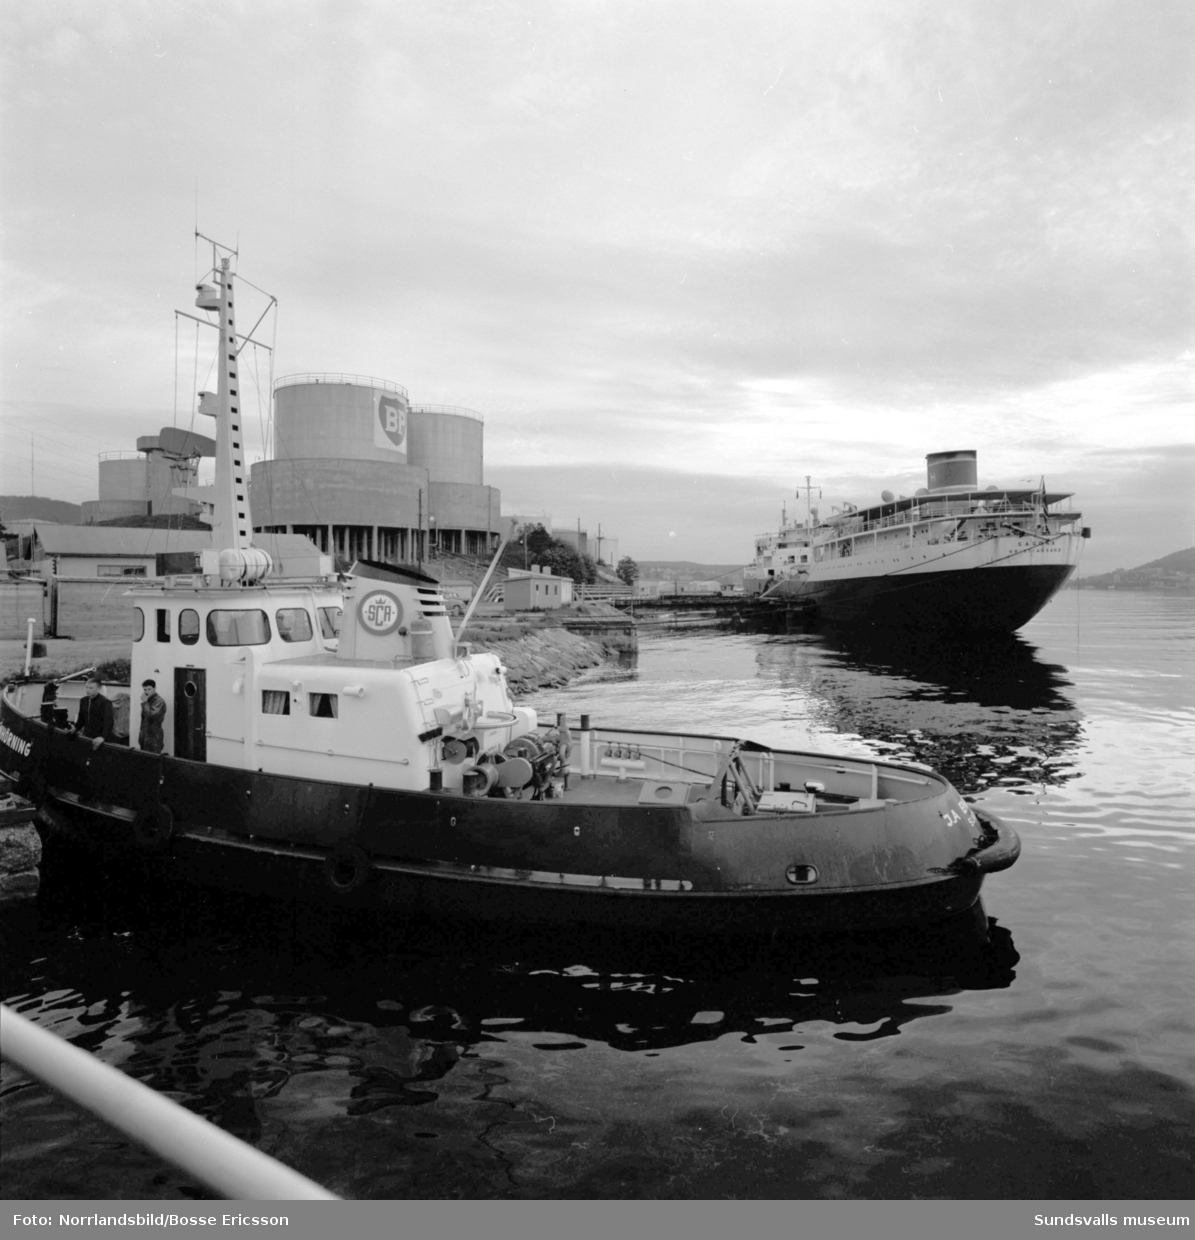 Vindskärsvarv. Sagona, 18000 ton, går ut och Oktania, 42000 ton, anländer. På bild nr 5 ses fotografen Ragge Ellefsson i aktion.